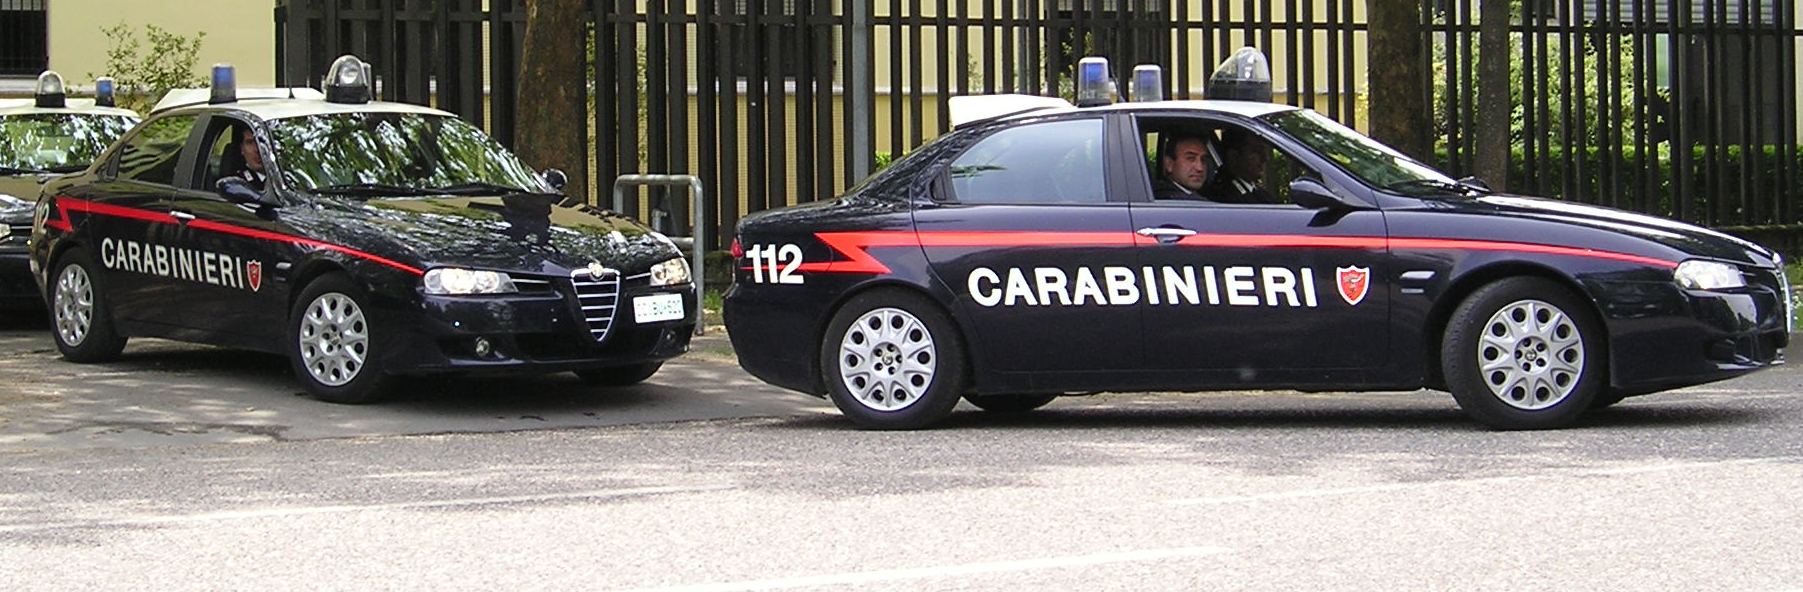 Focus 'Ndrangheta